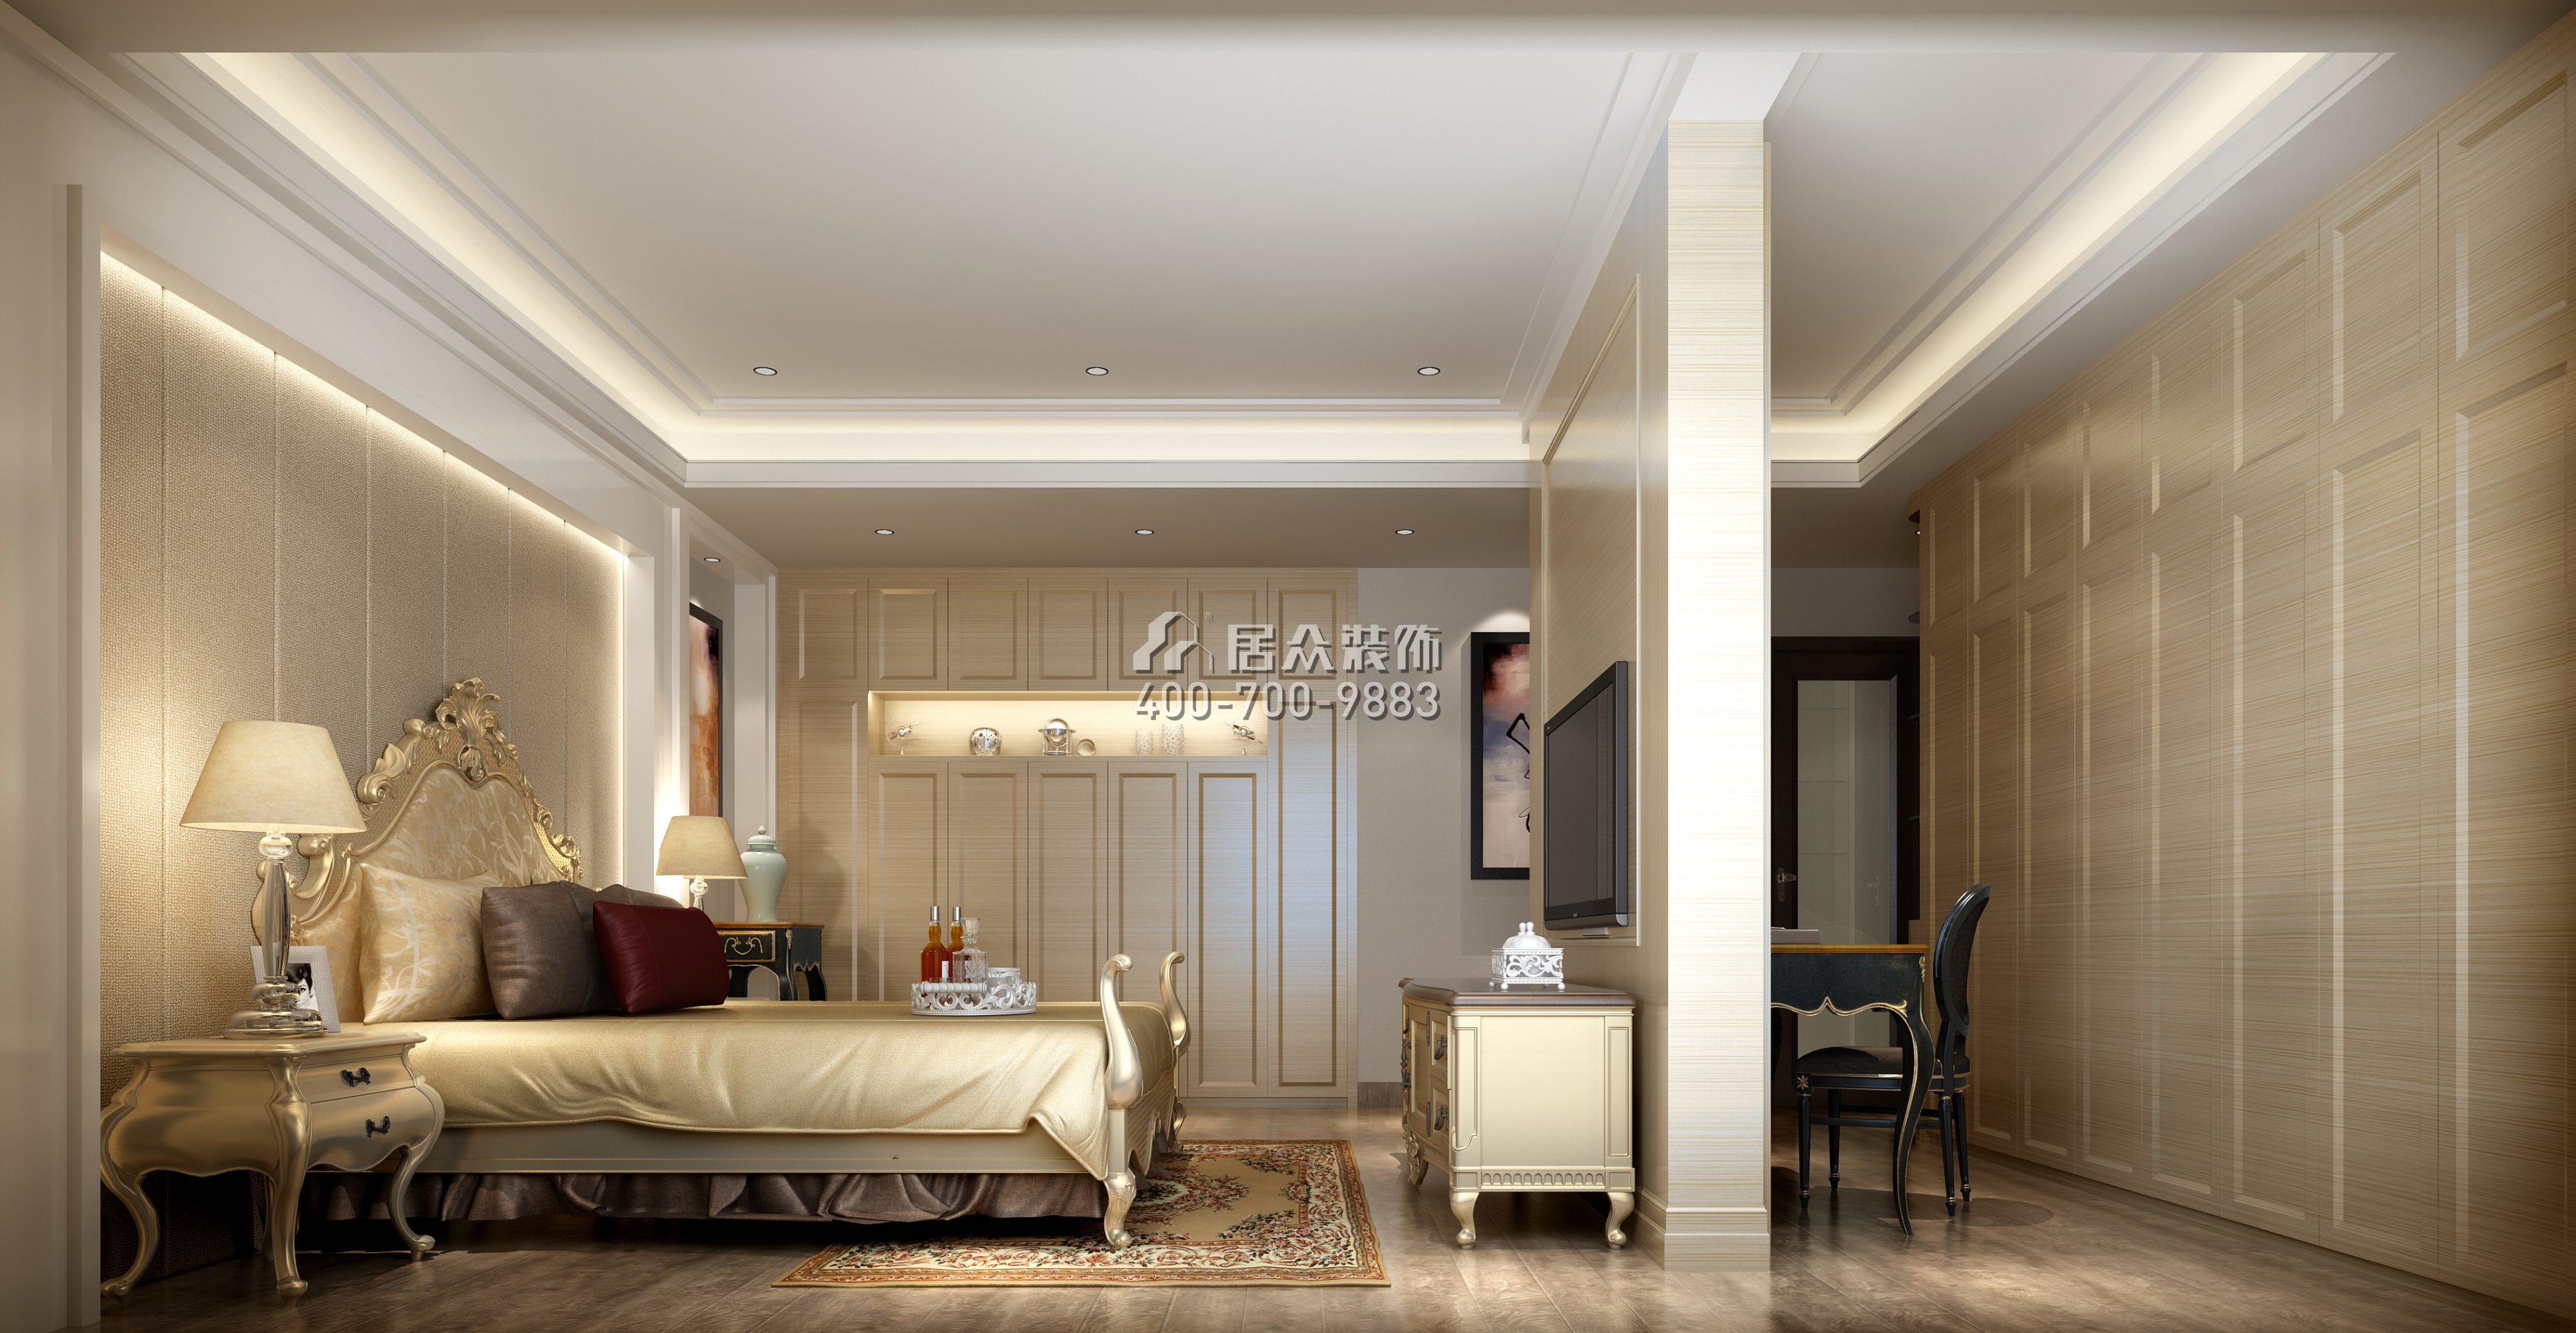 黃埔雅苑二期268平方米新古典風格復式戶型臥室裝修效果圖